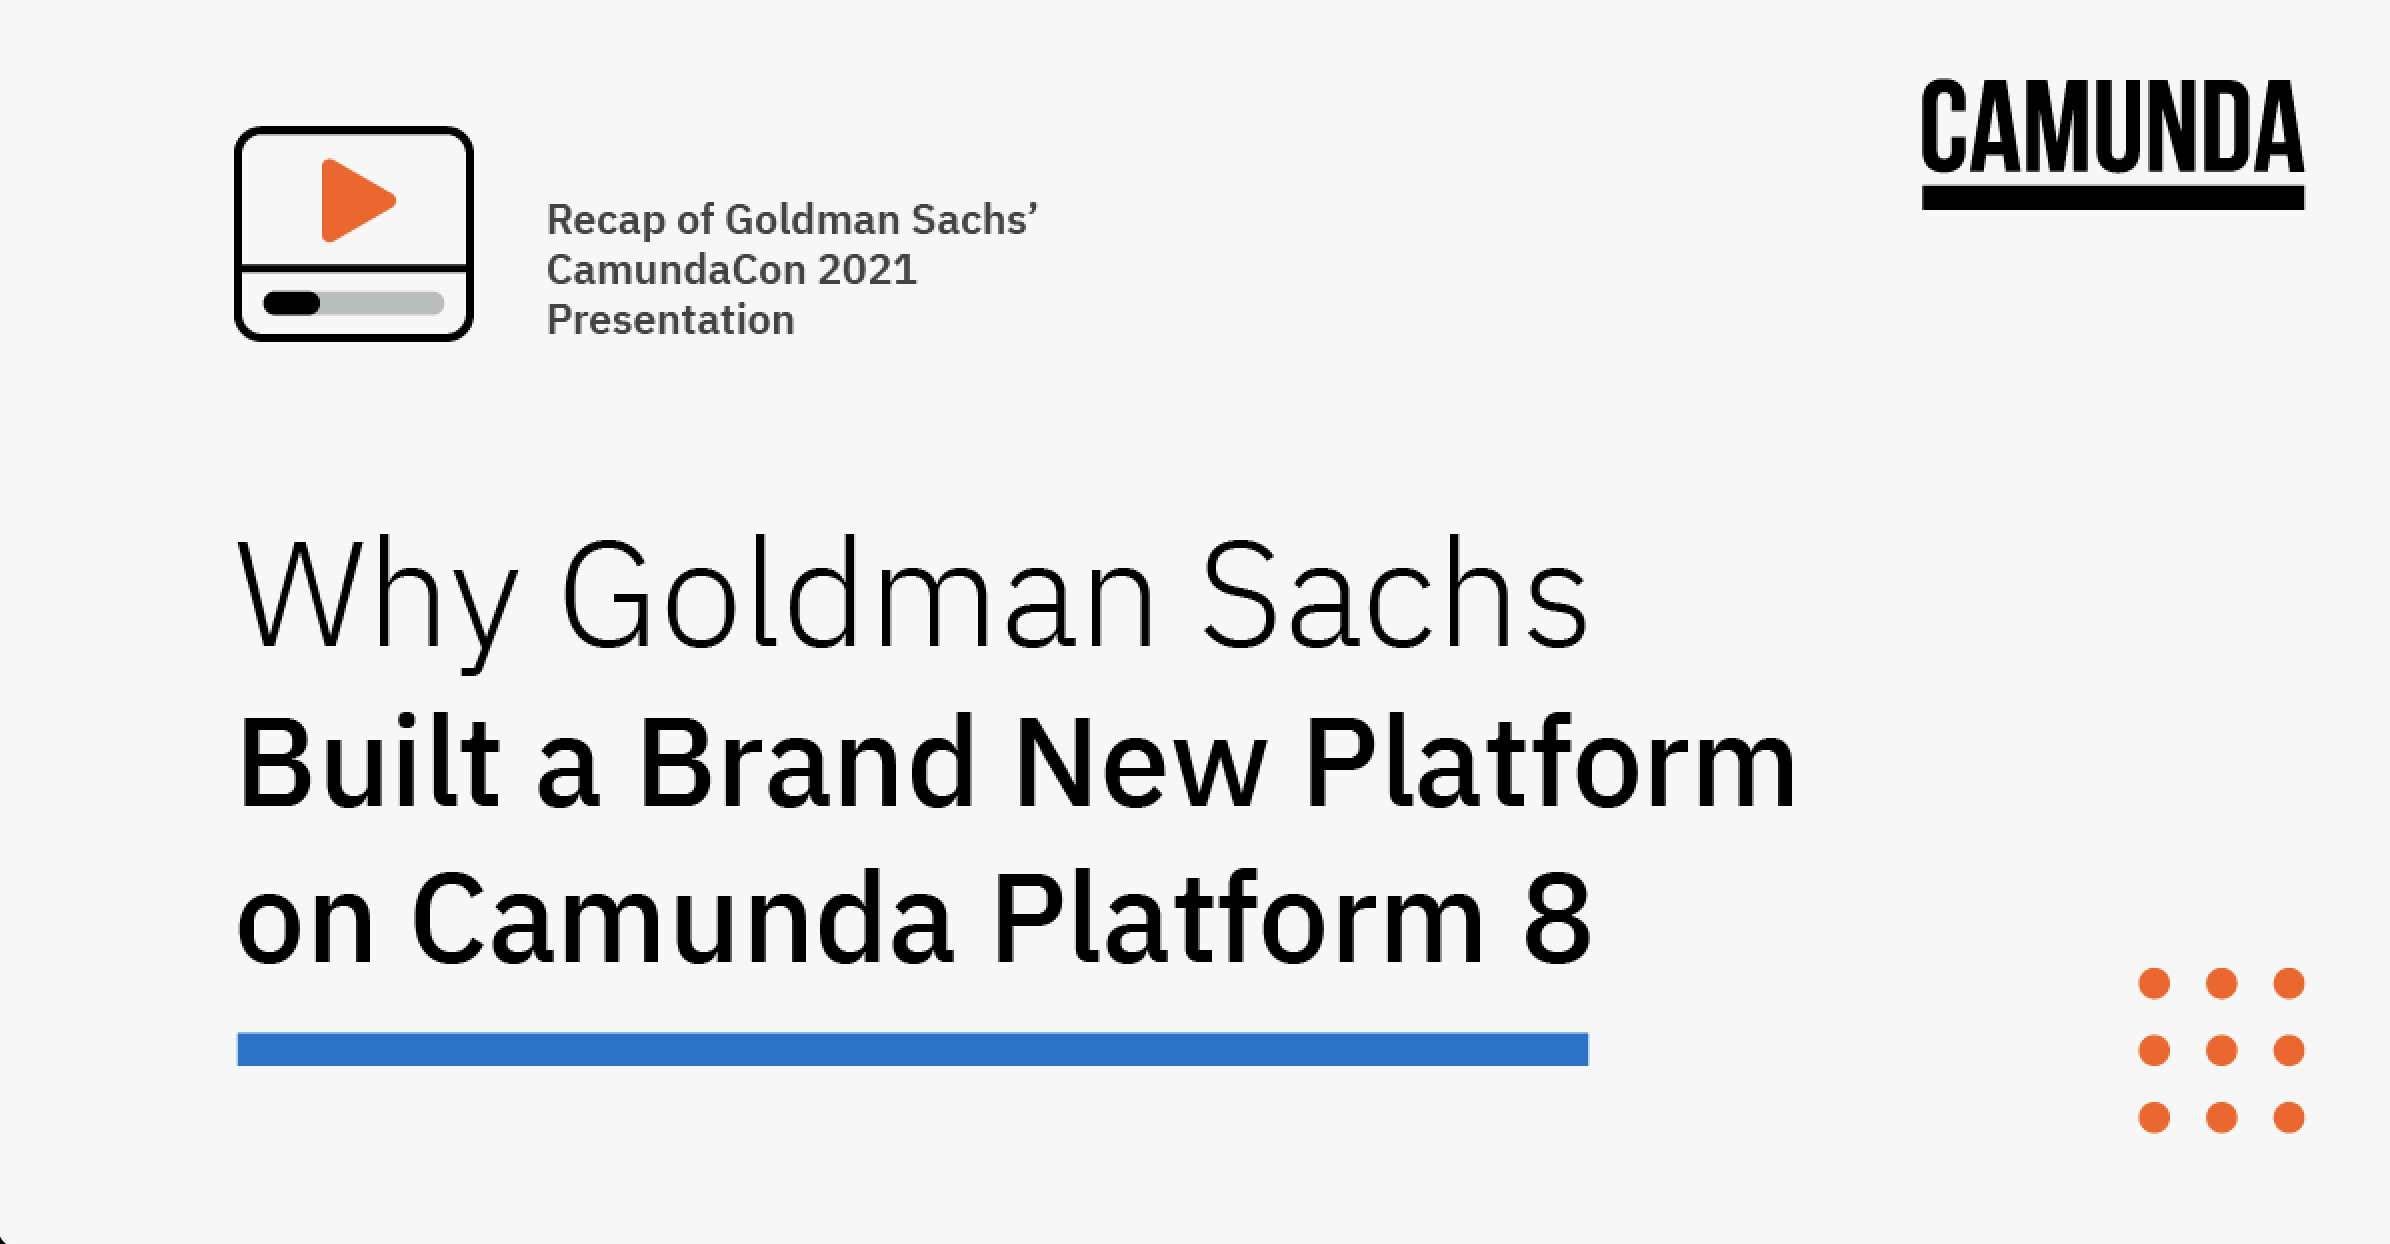 Why Goldman Sachs Built a Brand New Platform on Camunda Platform 8